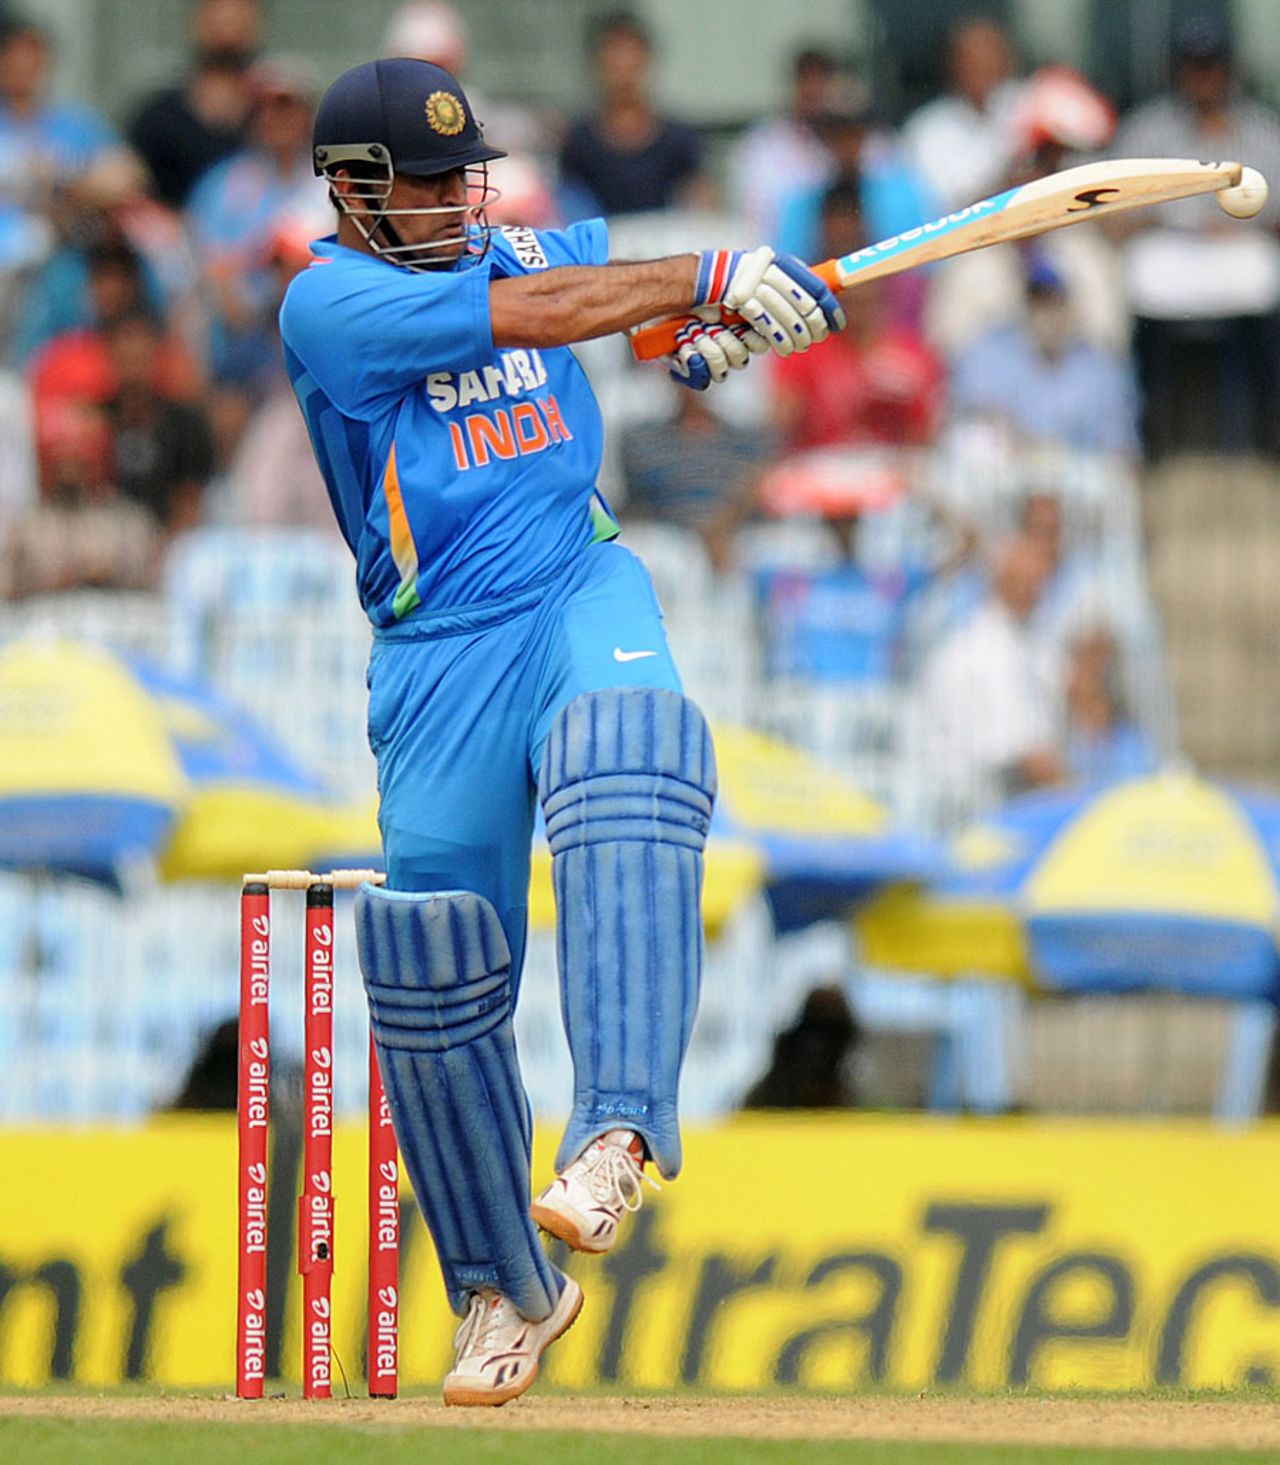 MS Dhoni plays the pull shot, India v Pakistan, 1st ODI, Chennai, December 30, 2012